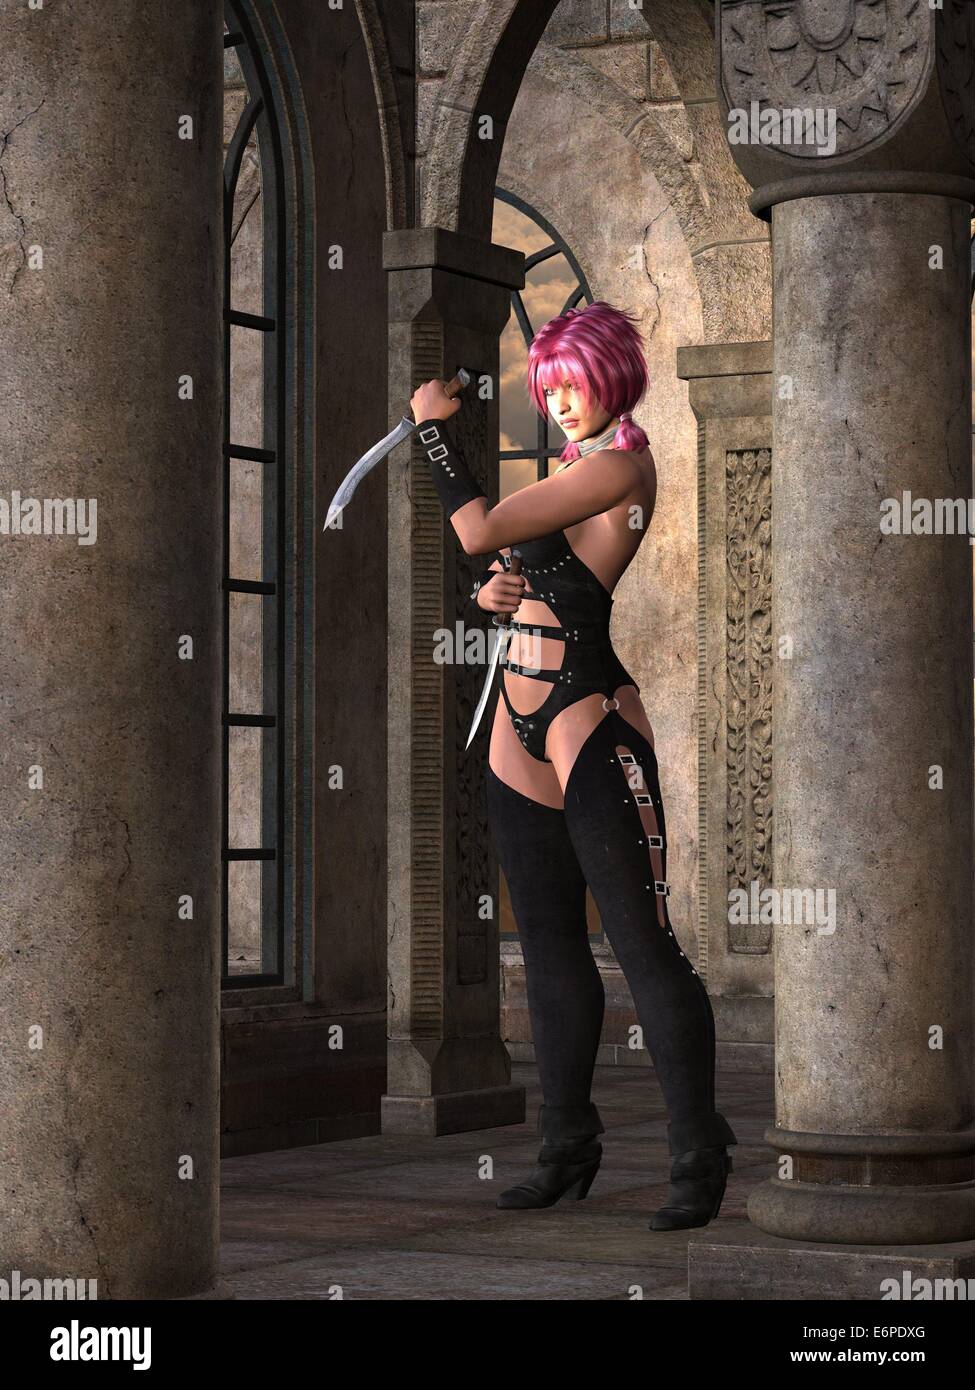 Fantasy warrior hembra de color rosa con pigtails en pose defensiva mantiene CUCHILLAS GEMELAS Foto de stock